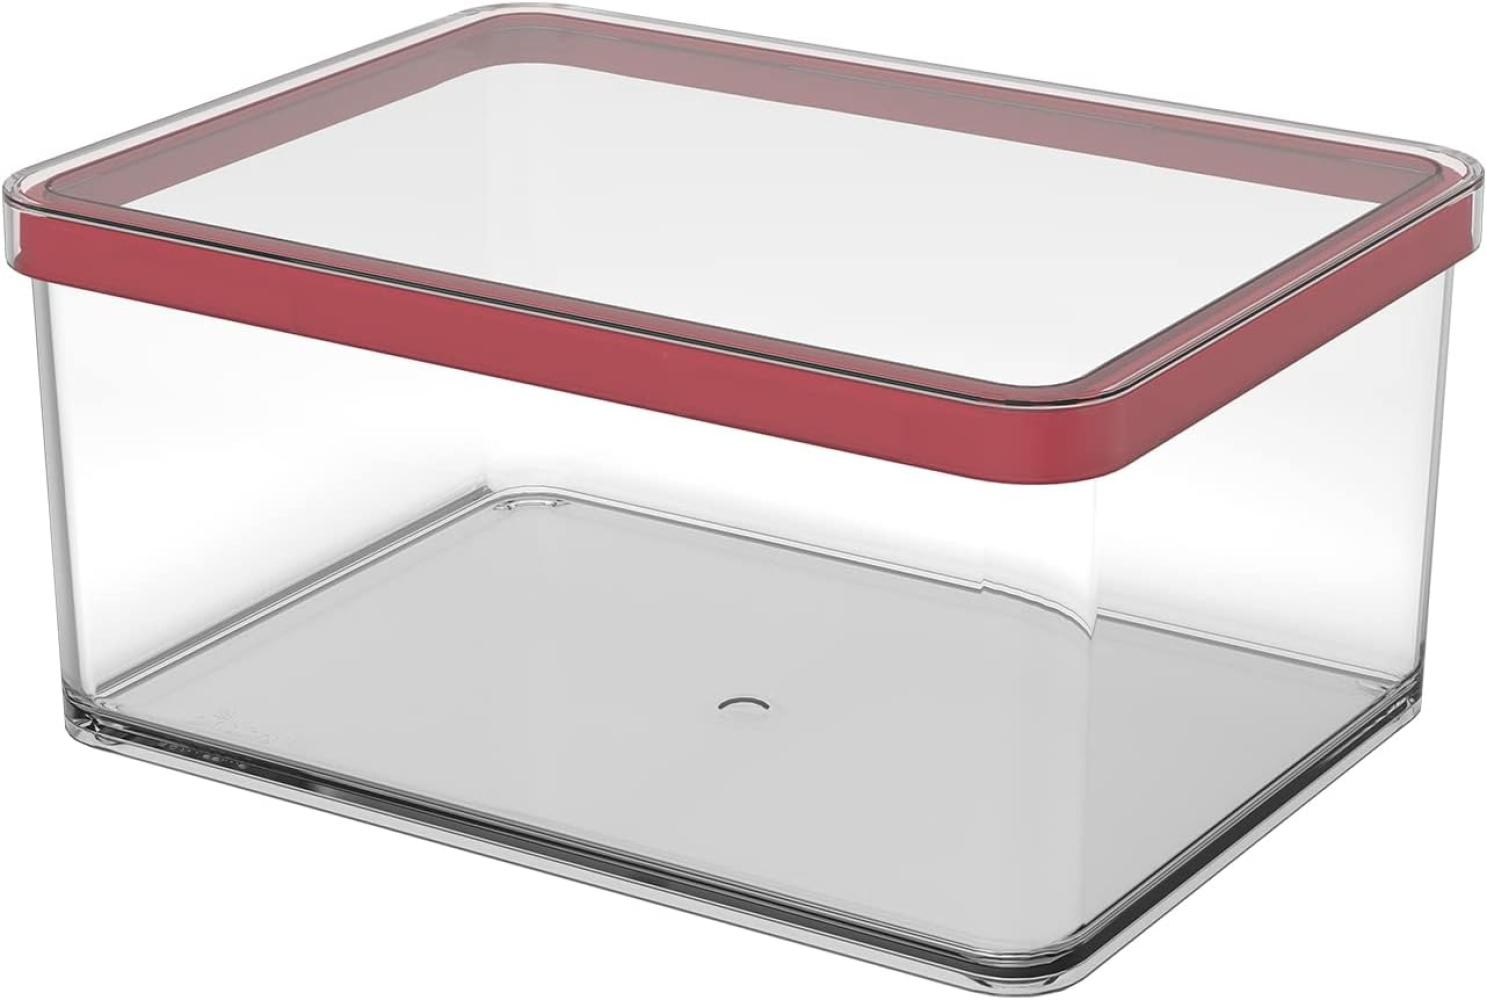 Rotho Loft rechteckige Vorratsdose 2. 25l mit Deckel und Dichtung, Kunststoff (SAN) BPA-frei, transparent/rot, 2. 25l (20. 0 x 15. 0 x 9. 6 cm) Bild 1